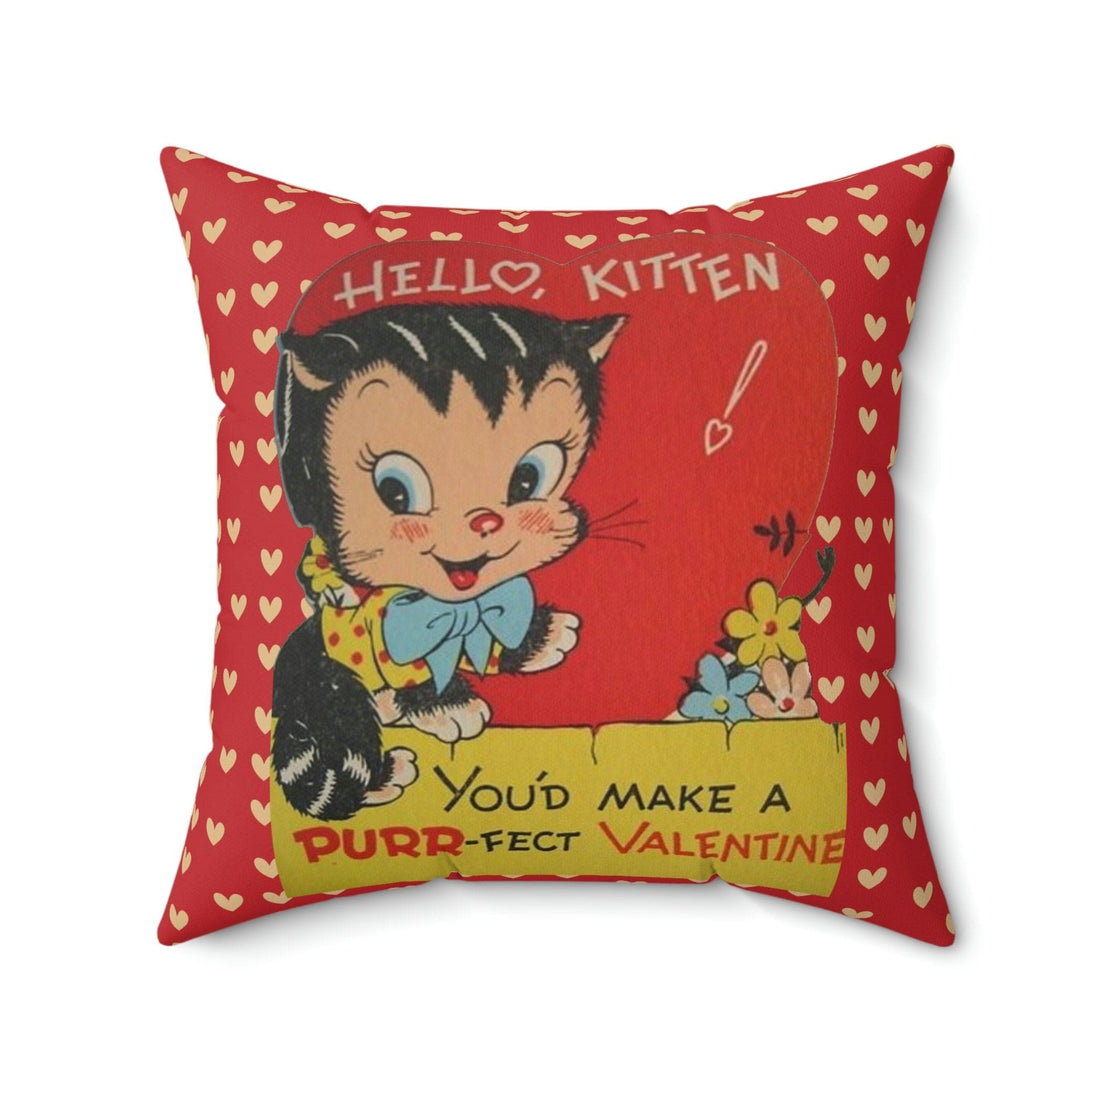 Kate McEnroe New York Vintage Retro Kitschy Kitty Valentine Throw Pillow CoverThrow Pillow Covers21634413851374215600